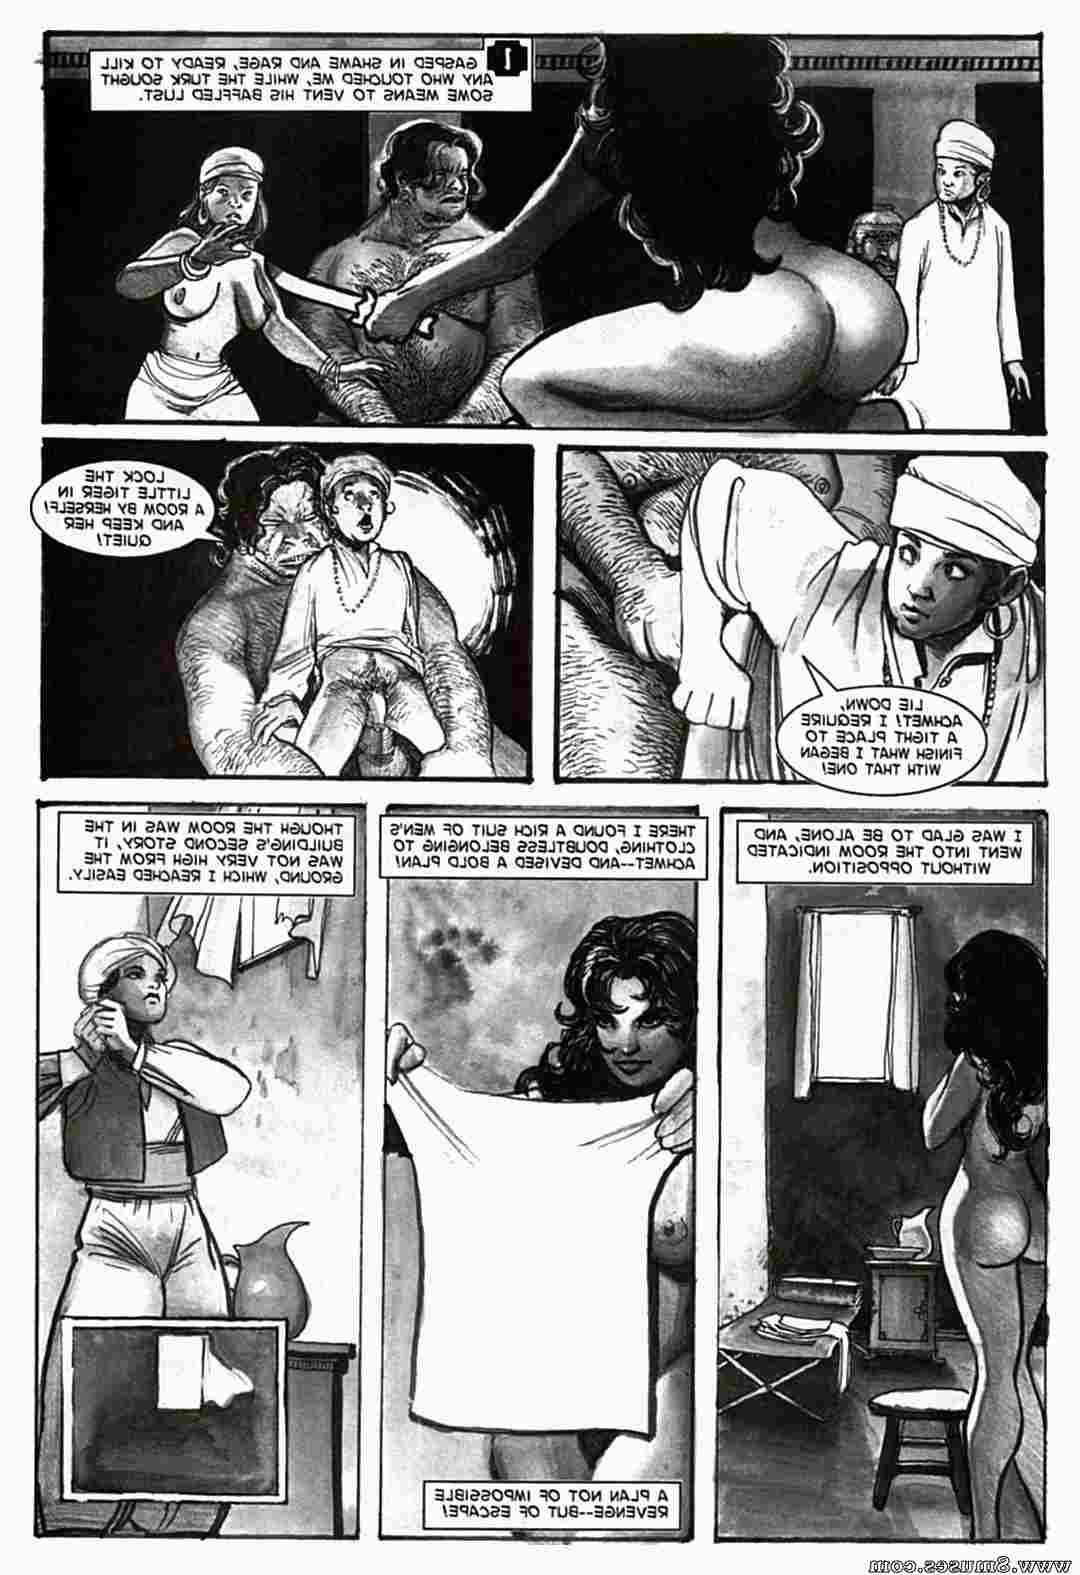 Amerotica-Comics/A-Night-In-A-Moorish-Harem/A-Night-In-A-Moorish-Harem-2 A_Night_In_A_Moorish_Harem_2__8muses_-_Sex_and_Porn_Comics_16.jpg